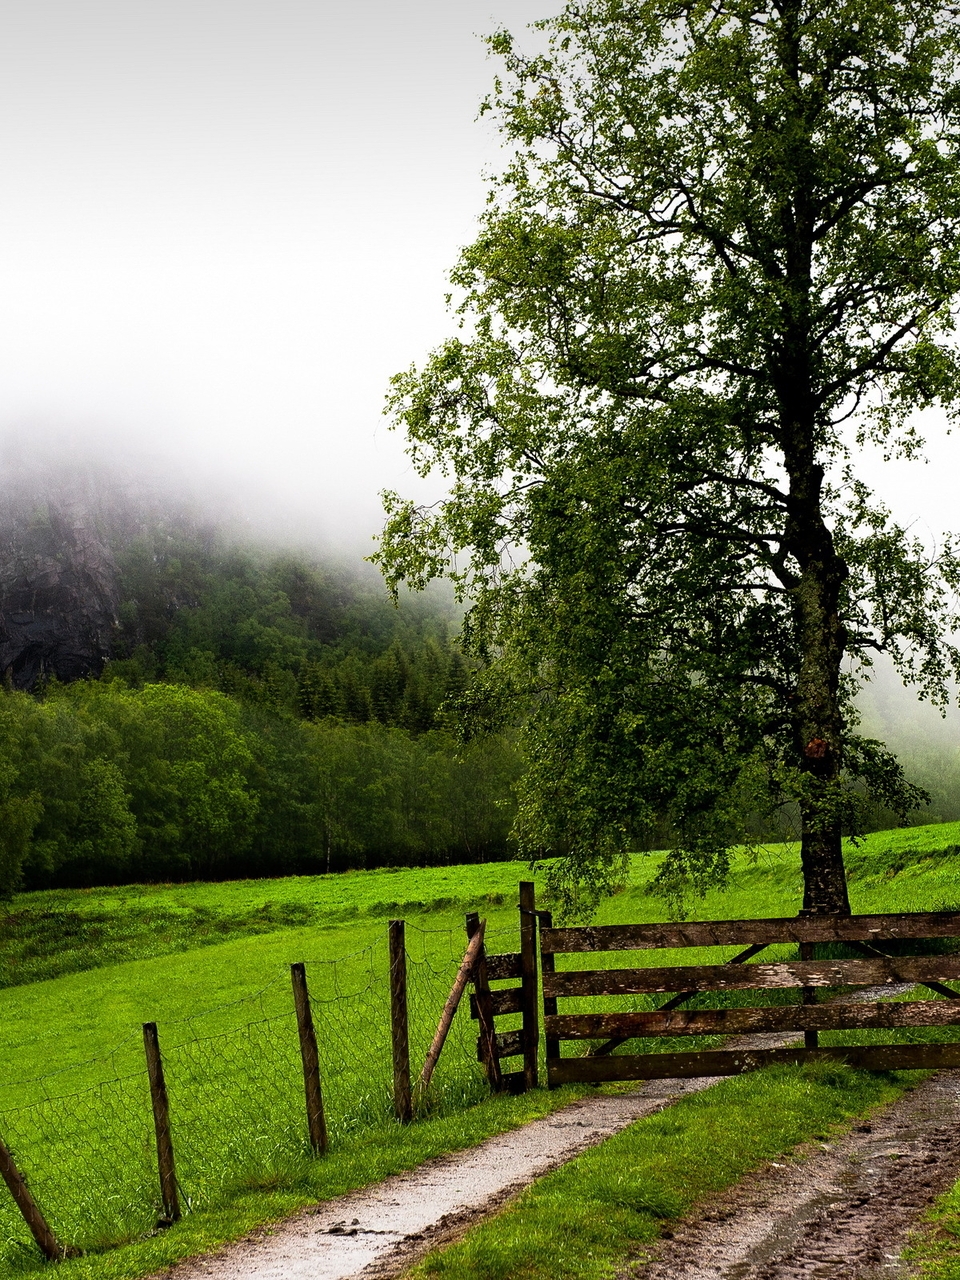 Картинка: Пейзаж, дорога, забор, ворота, поле, деревья, горы, туман, зелень